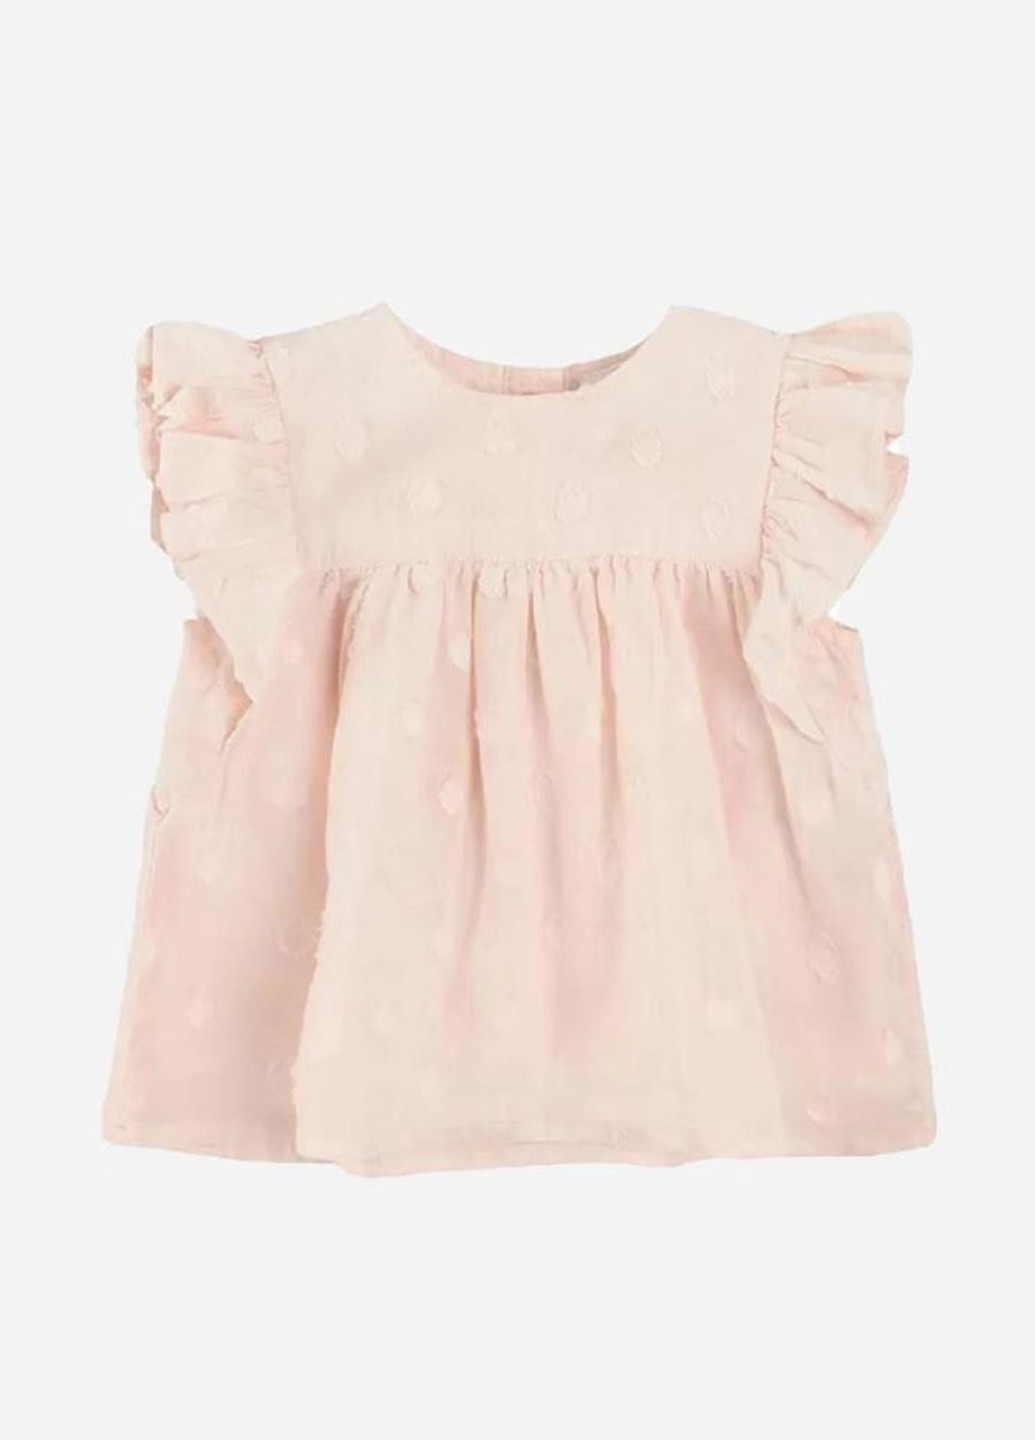 Светло-розовая в горошек блузка Cool Club летняя